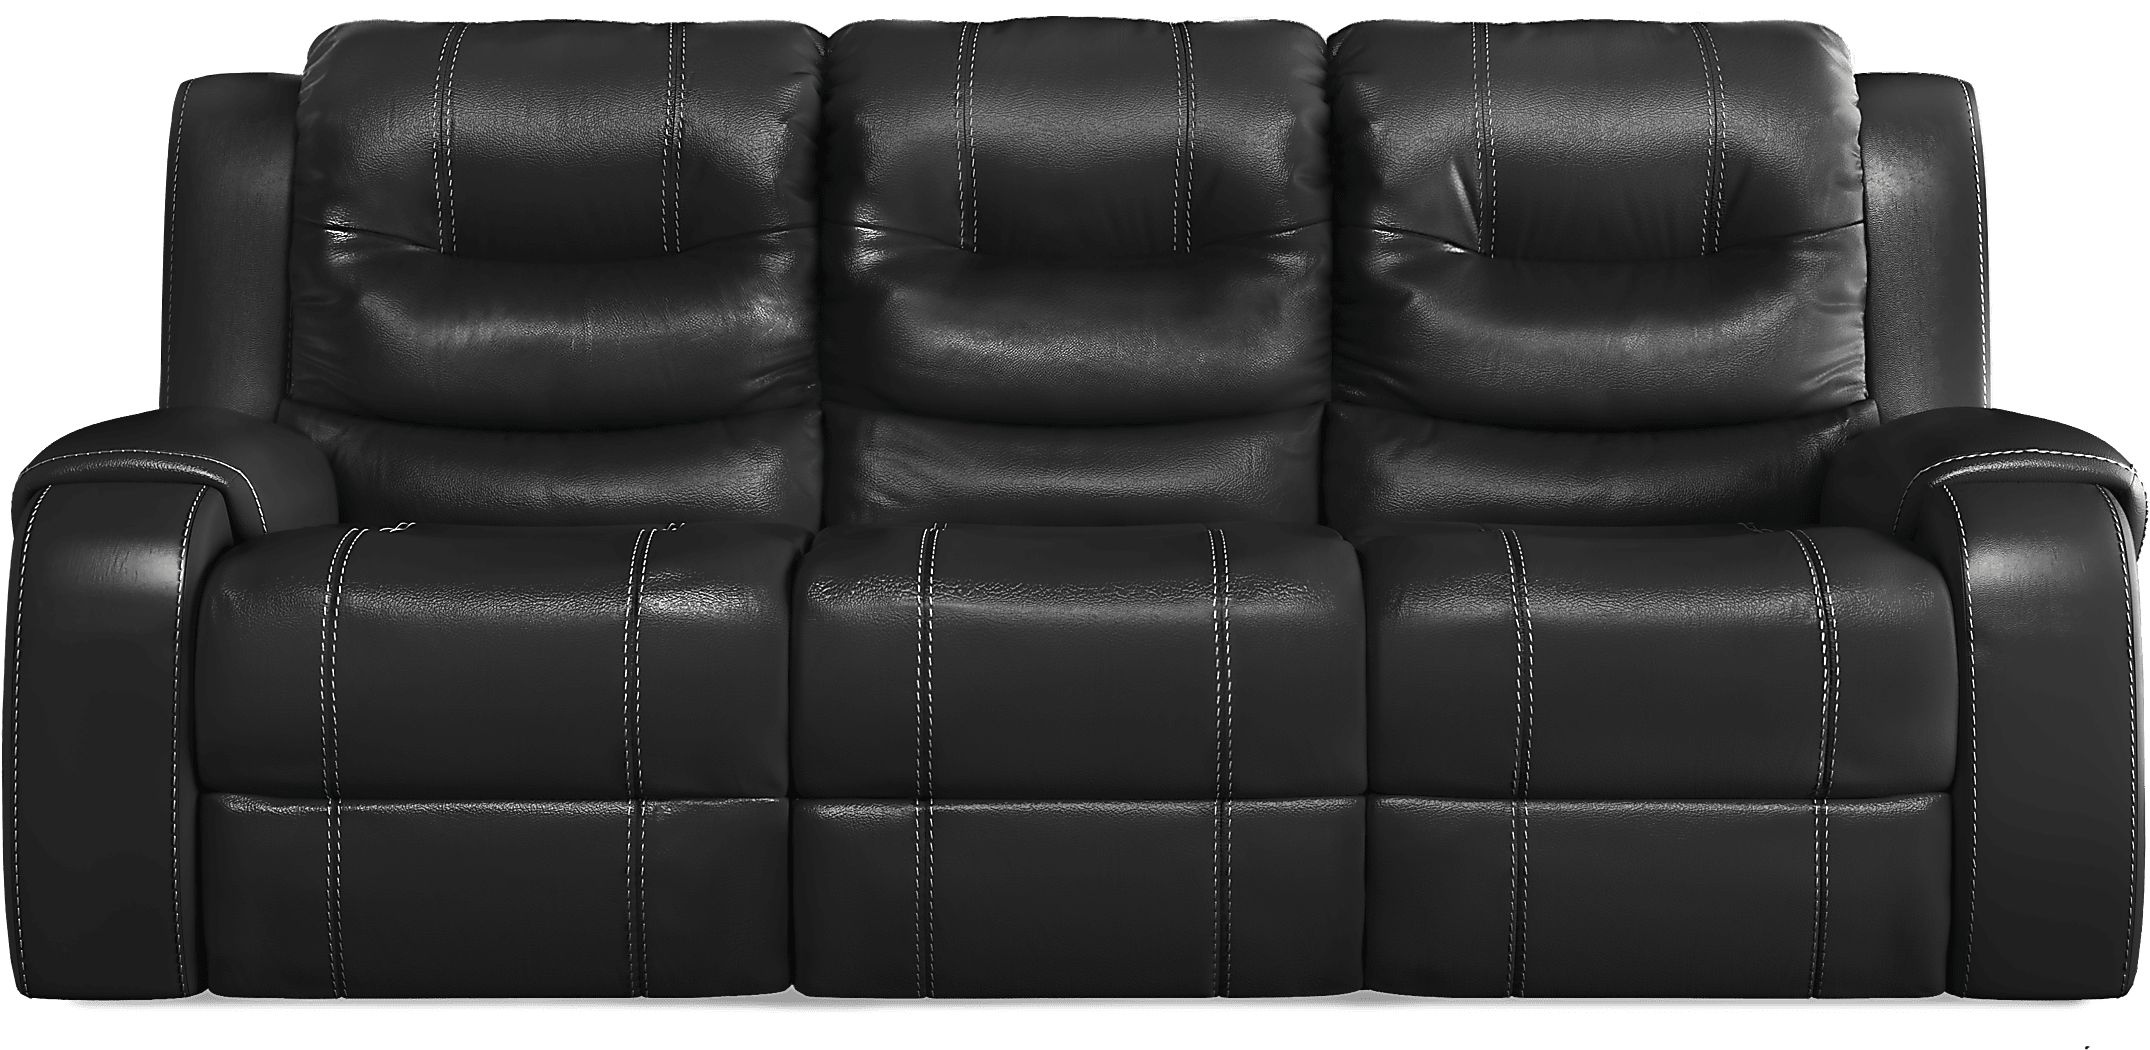 sky ridge mahogany leather reclining sofa reviews